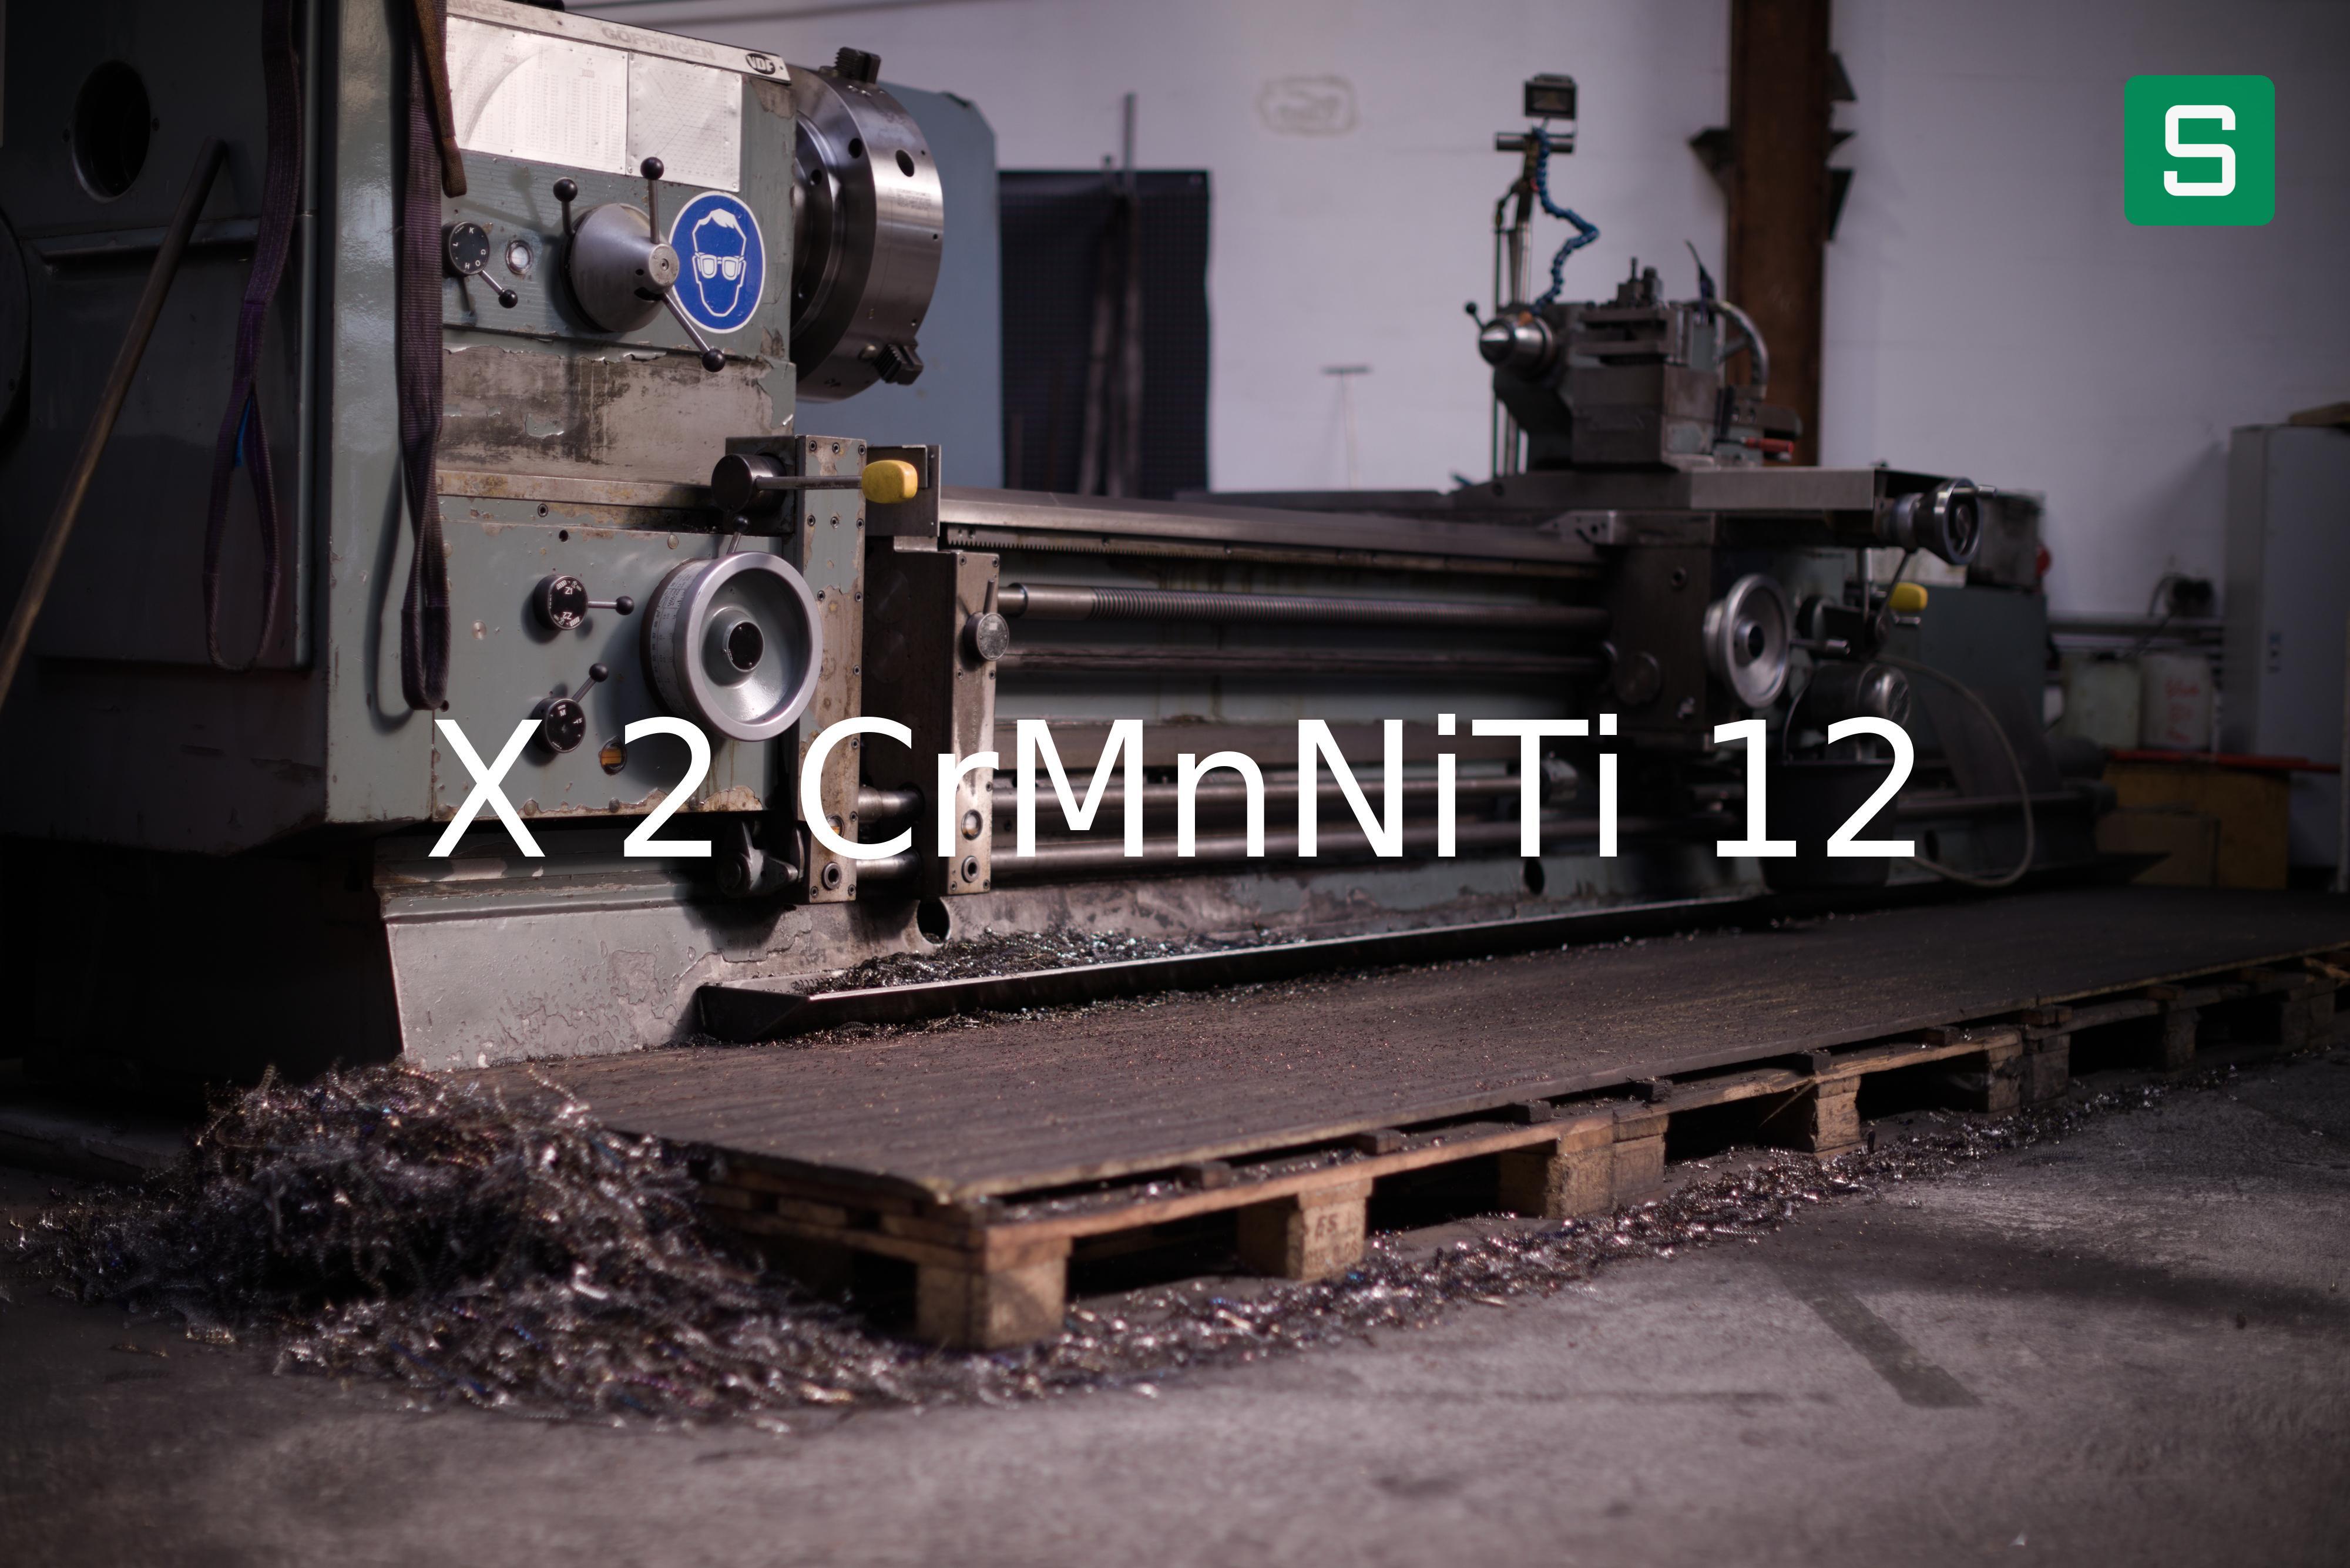 Steel Material: X 2 CrMnNiTi 12